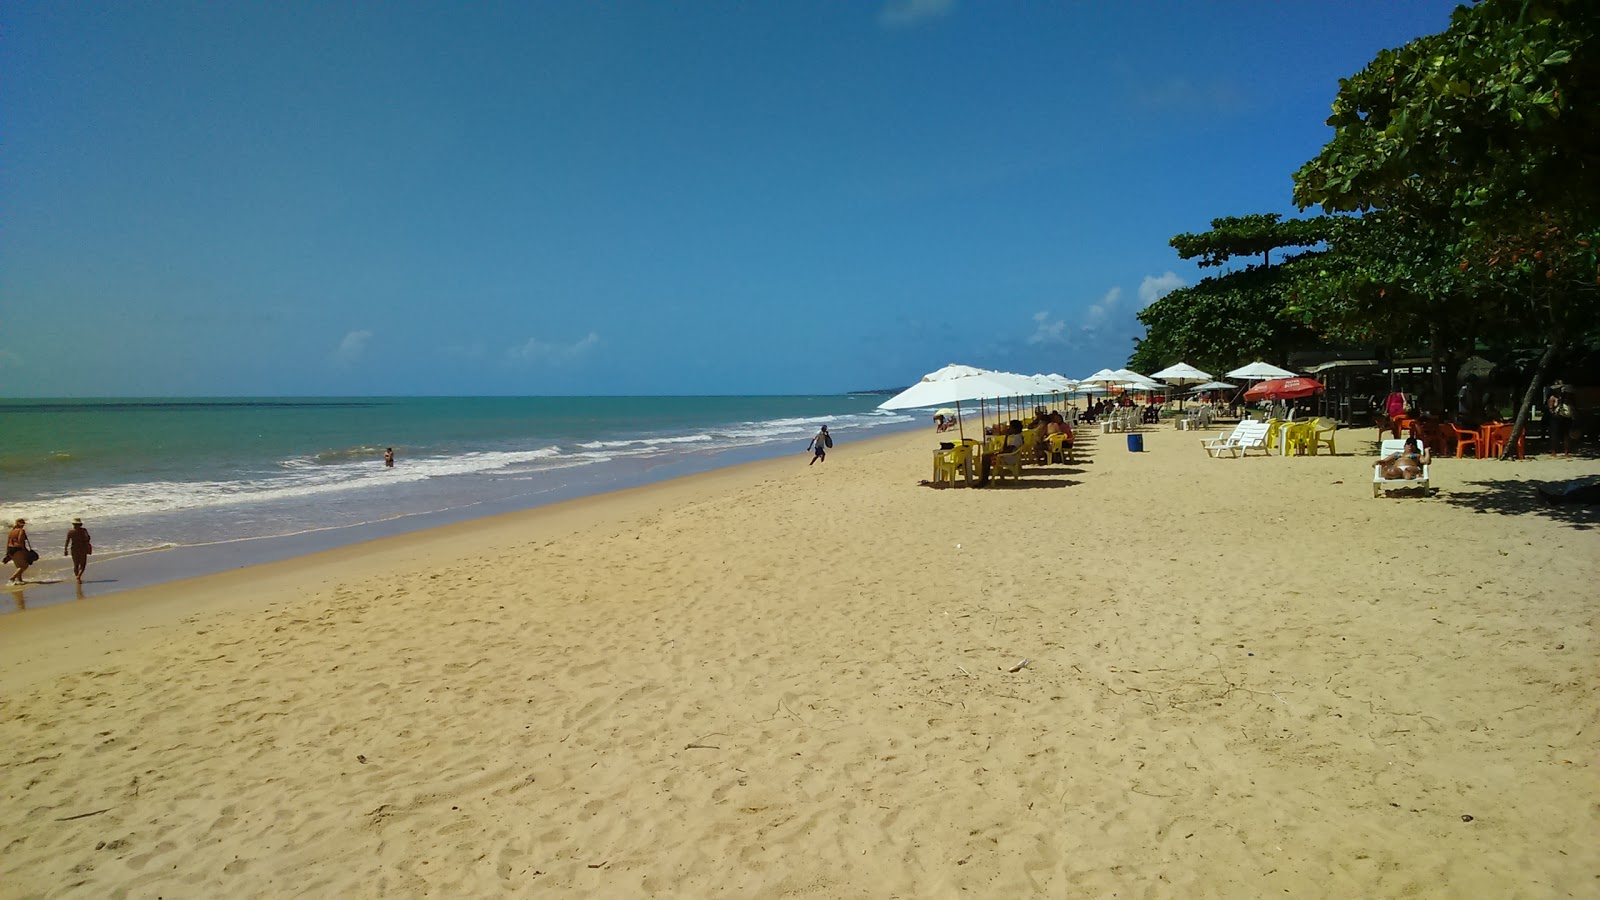 Foto af Praia Do Mundai - populært sted blandt afslapningskendere